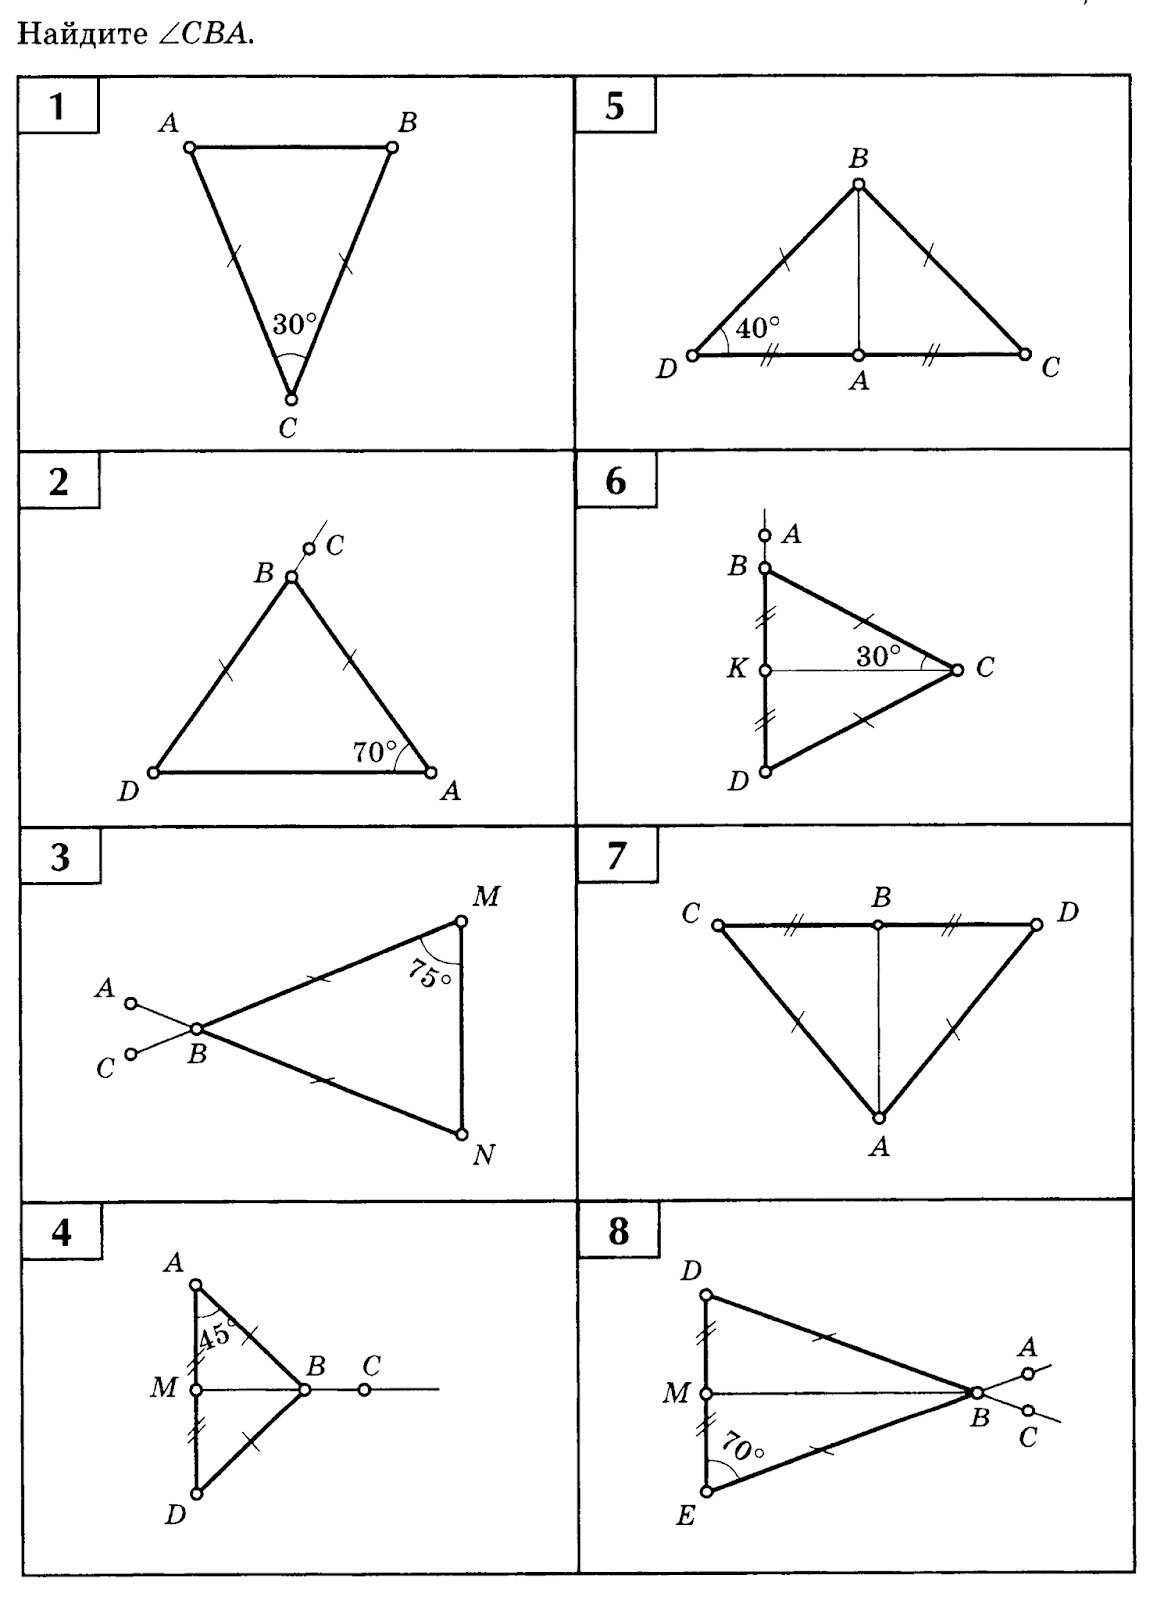 Задачи на чертежах 7 классы. Решение задач по готовым чертежам равнобедренный треугольник 7 класс. Равнобедренный треугольник задачи на готовых чертежах 7 класс. Равнобедренный треугольник задачи на готовых чертежах 7 класс Балаян. Задачи на готовых чертежах 7-9 классы равнобедренный треугольник.